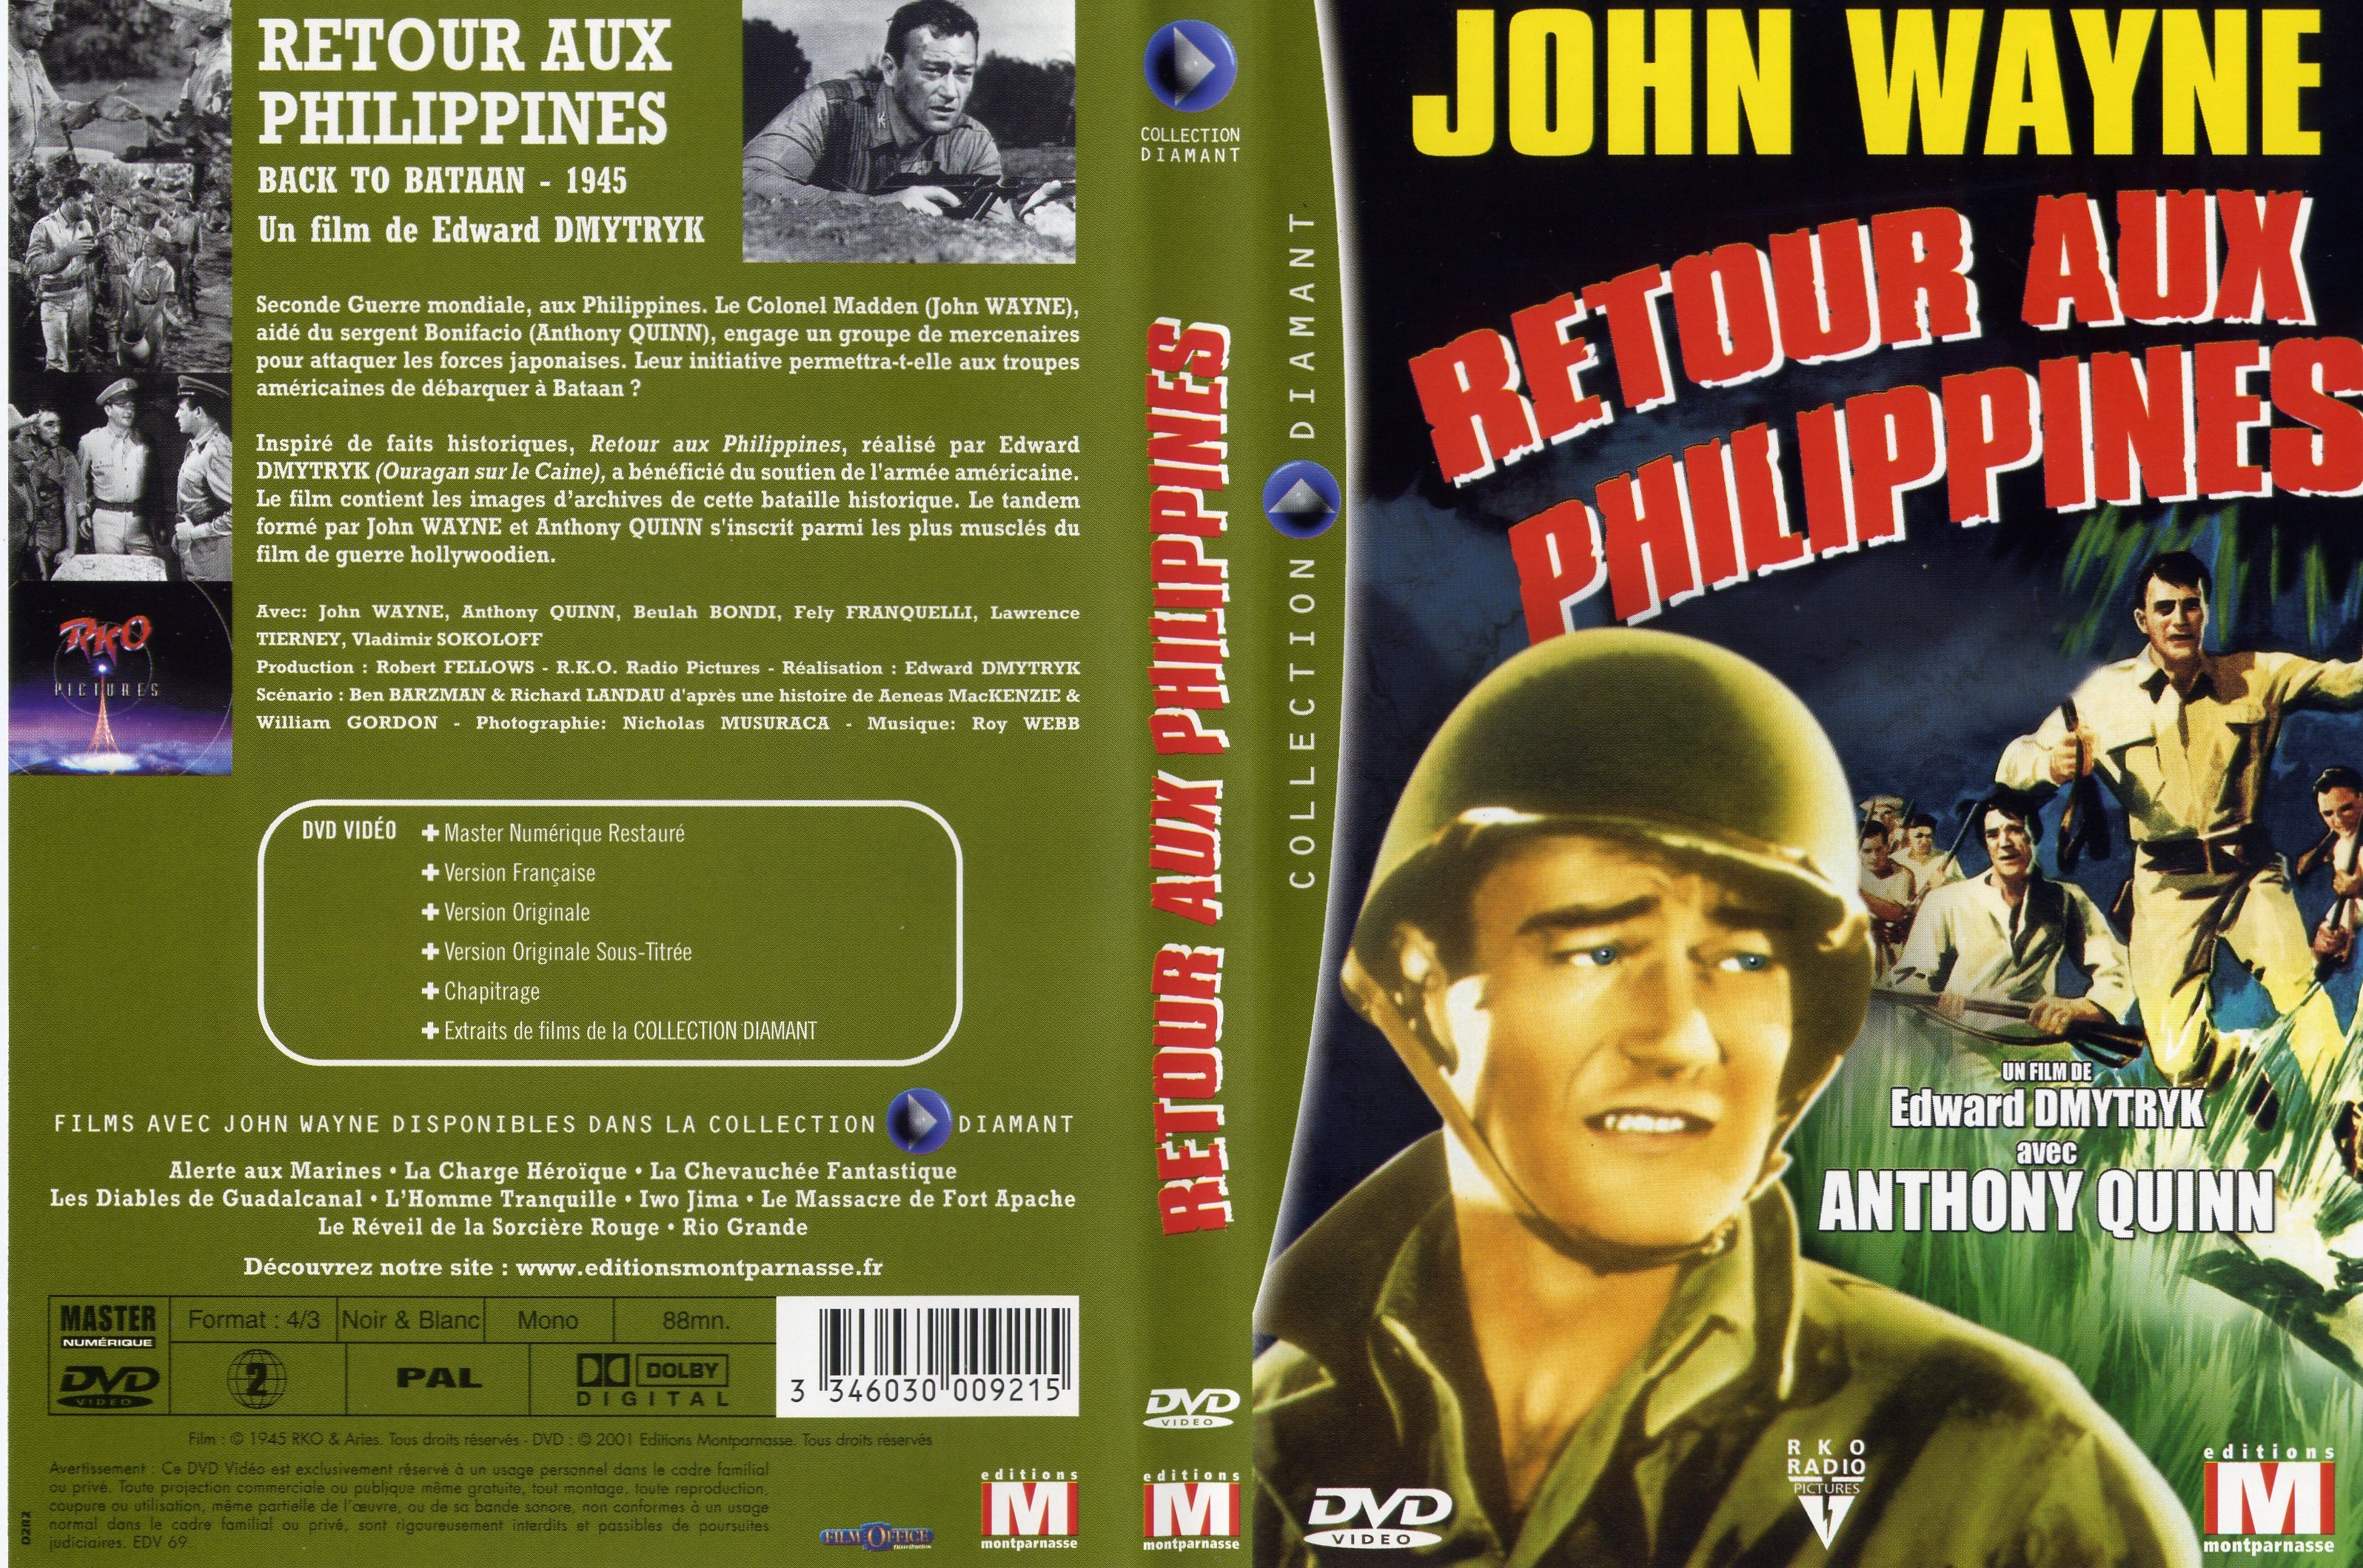 Jaquette DVD Retour aux Philippines v2